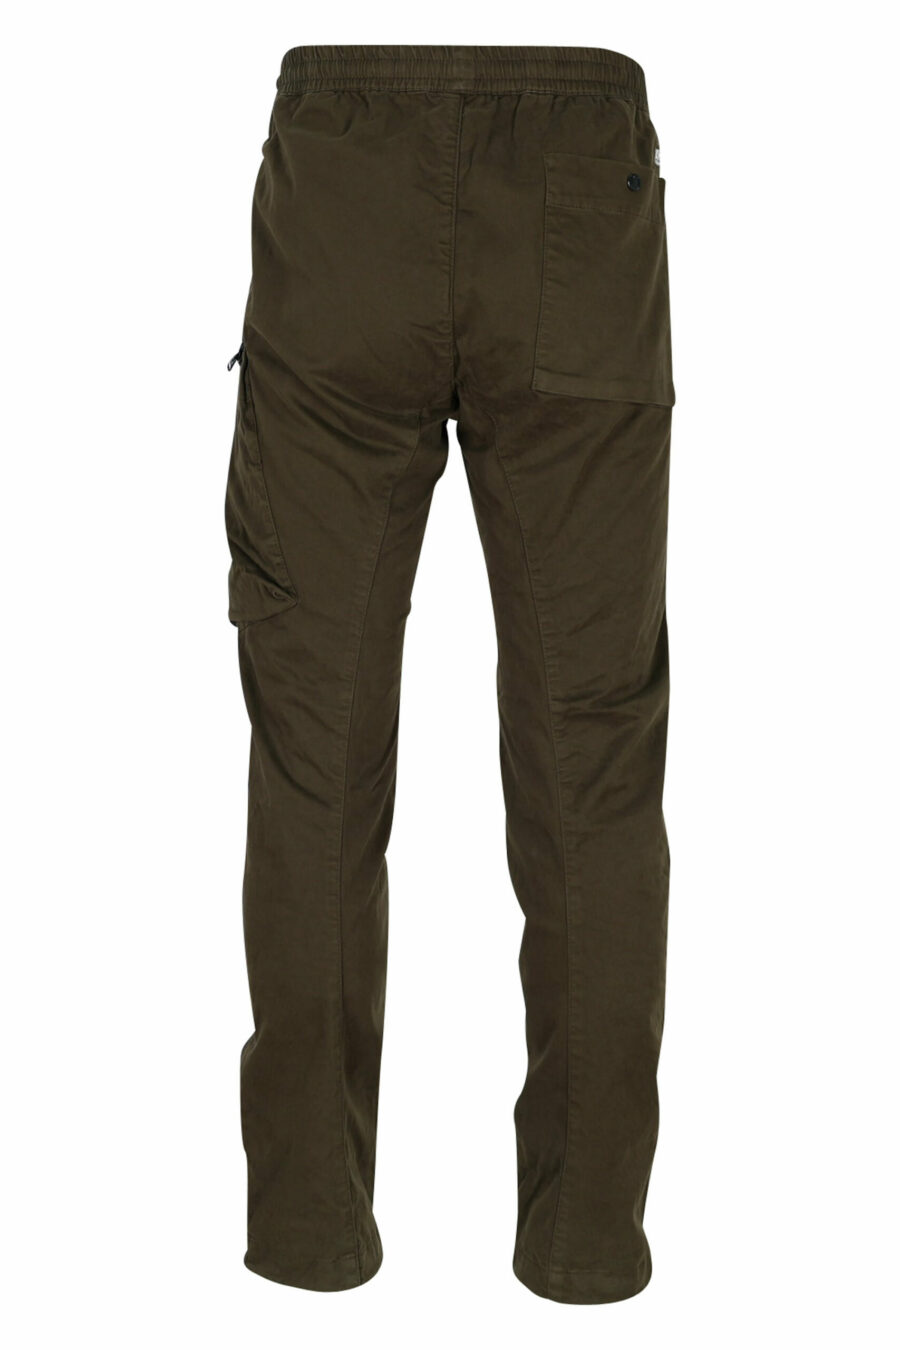 Pantalón verde militar de satén elástico con bolsillo lateral y logo lente - 7620943537833 2 scaled